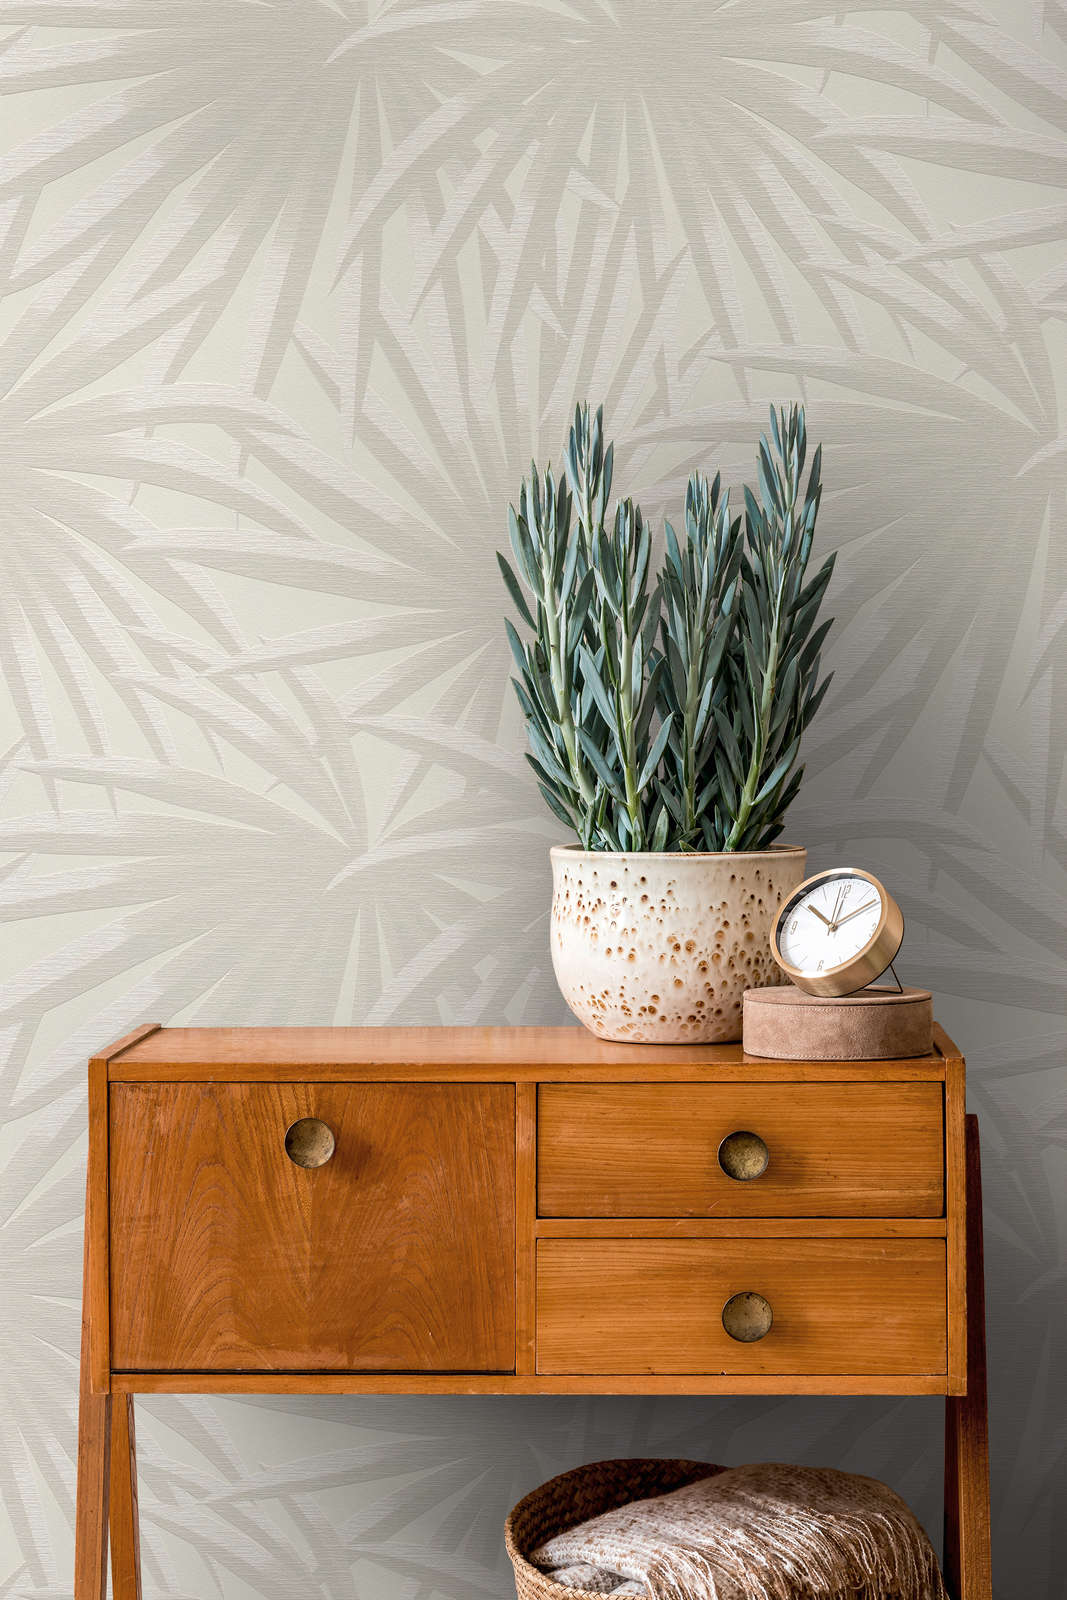             Vliestapete mit Palmenblatt Muster in sanftem Farbton – Creme, Hellgrau
        